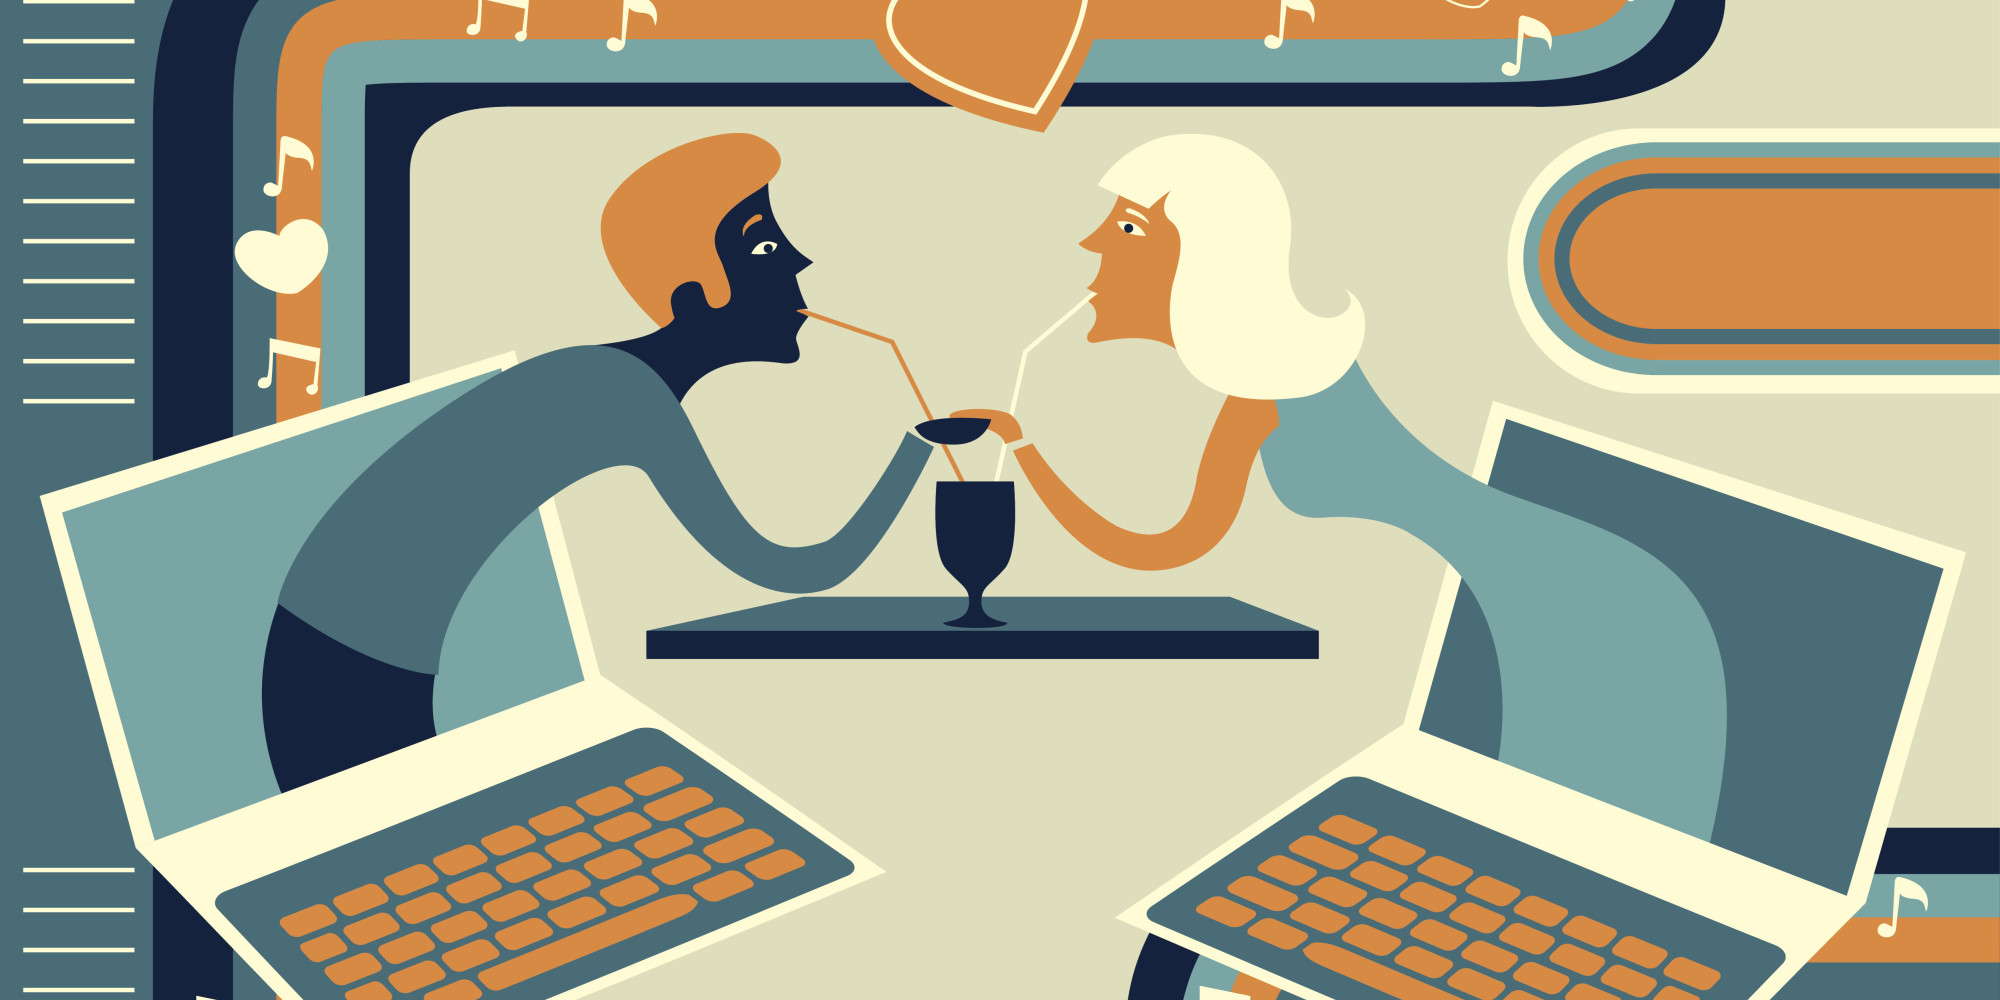 Große eisbrecher für online-dating